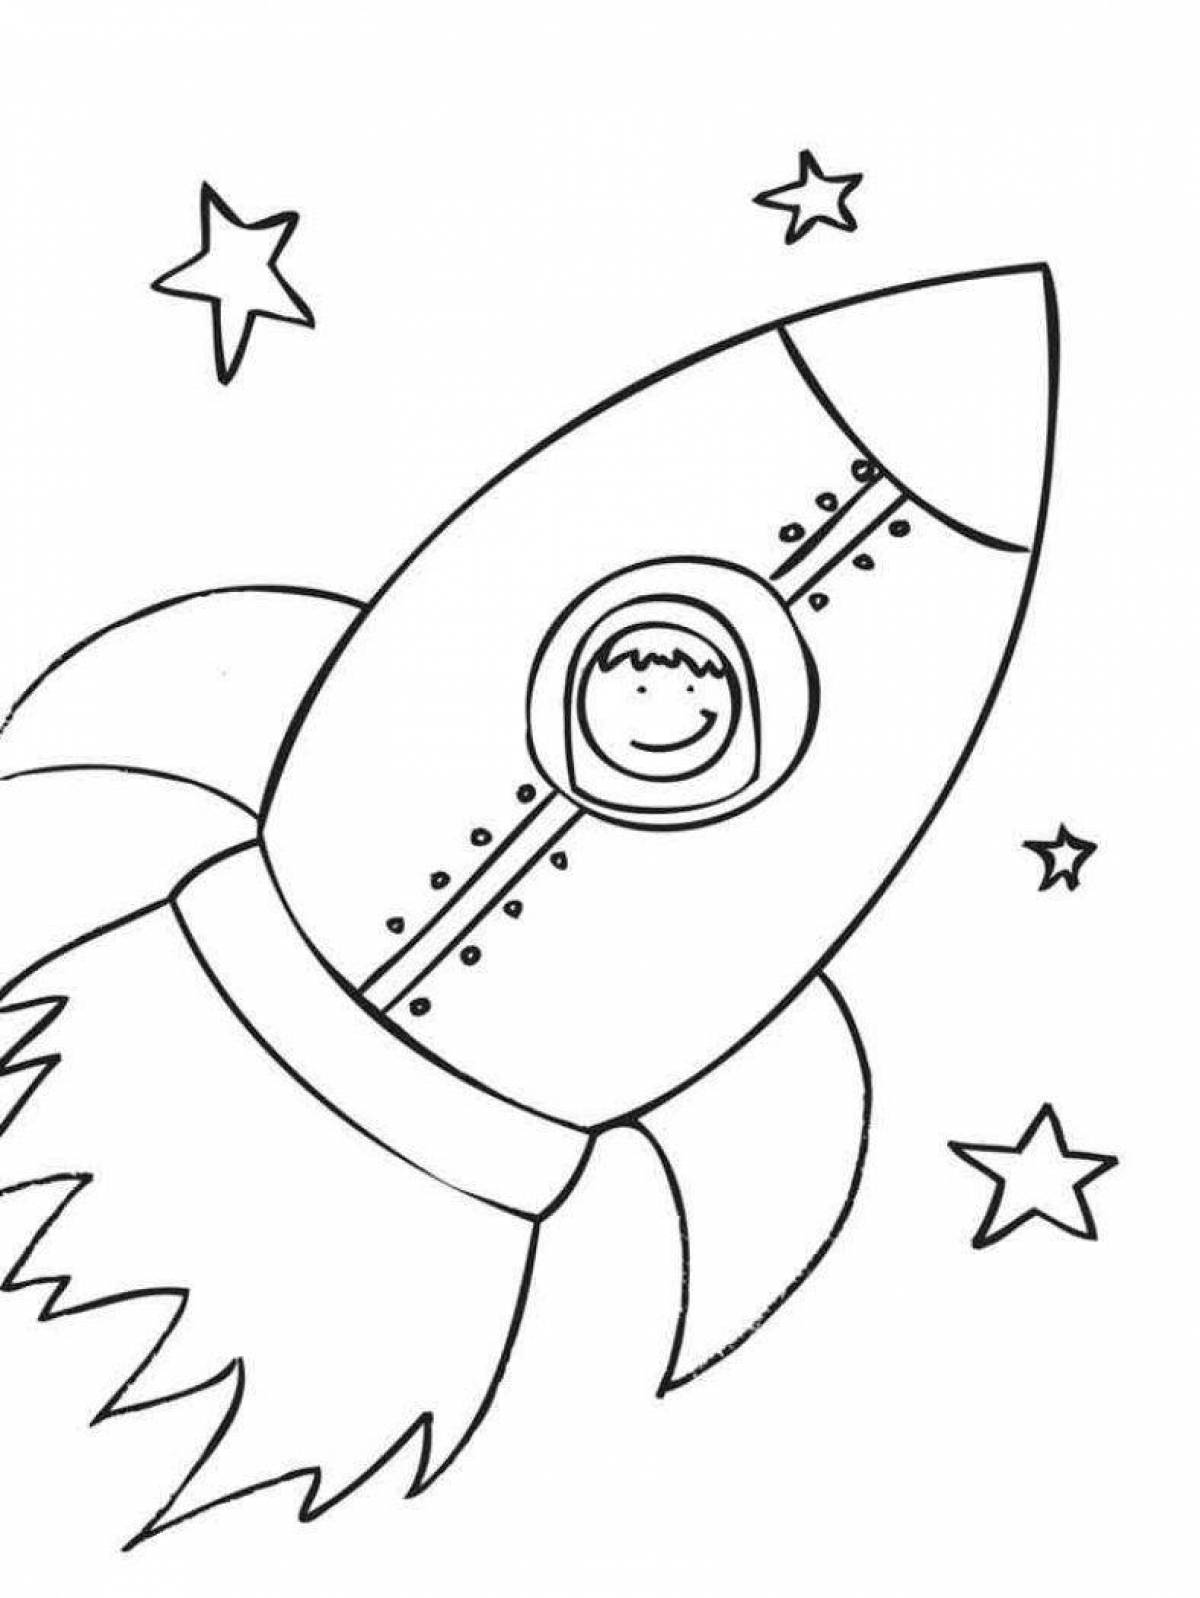 Картинки ко дню космонавтики для детей. Ракета раскраска. Раскраска для малышей. Космос. Космос раскраска для детей. Ракета раскраска для детей.